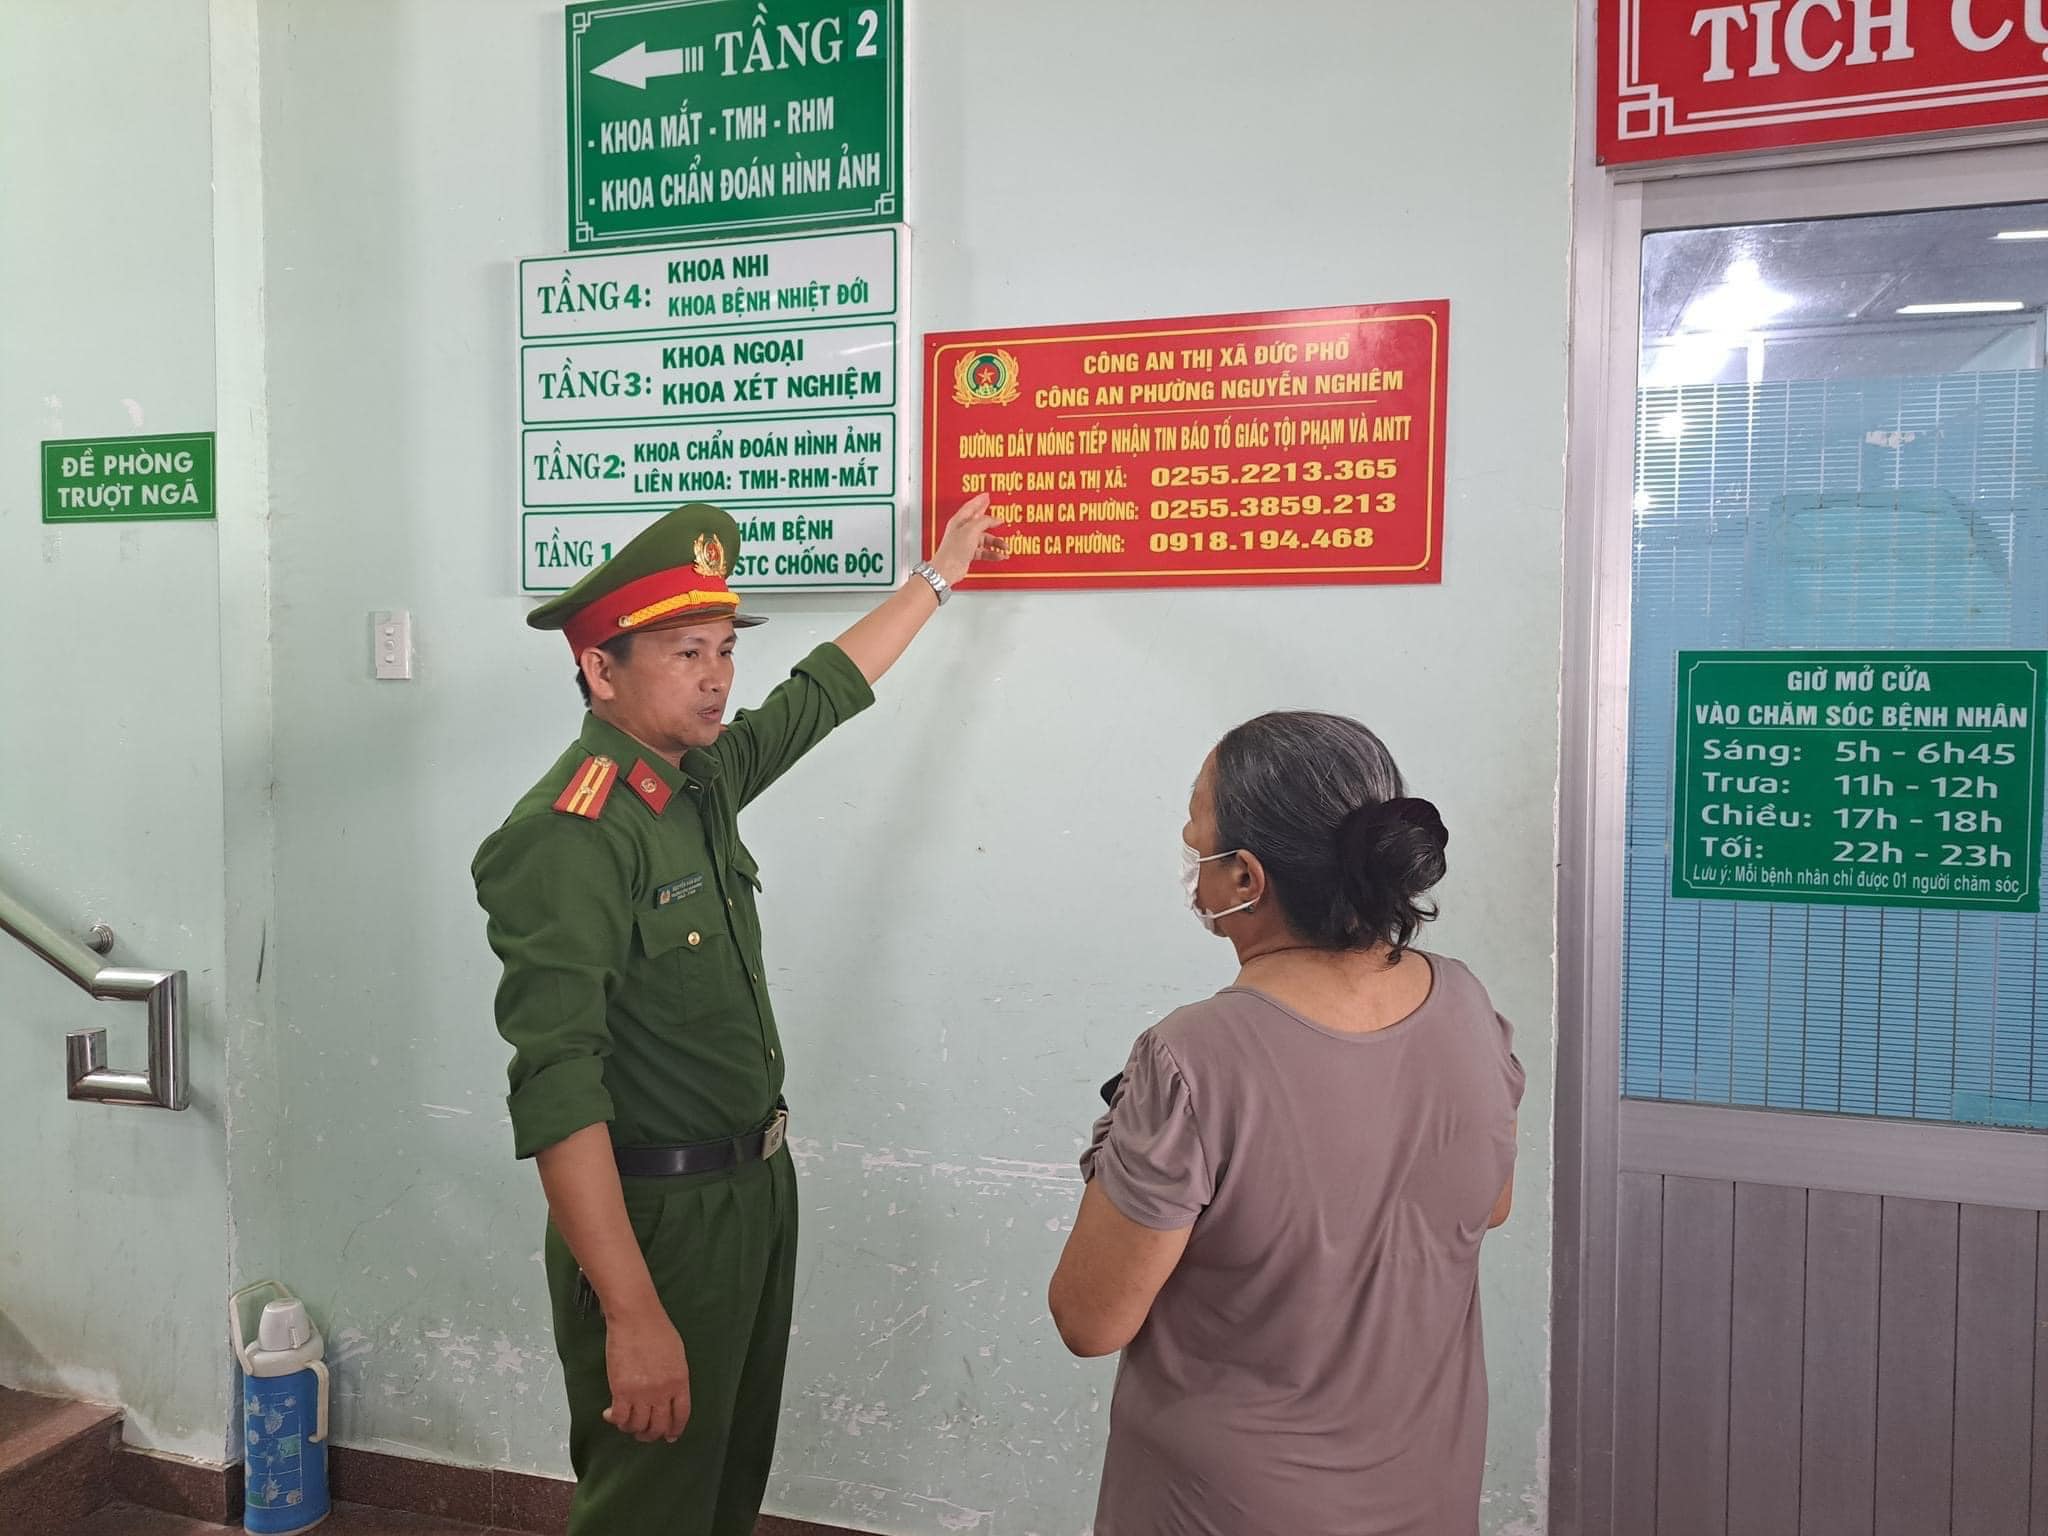 Công khai đường dây nóng tiếp nhận tin báo tố giác tội phạm và an ninh trật tự của Công an phường Nguyễn Nghiêm